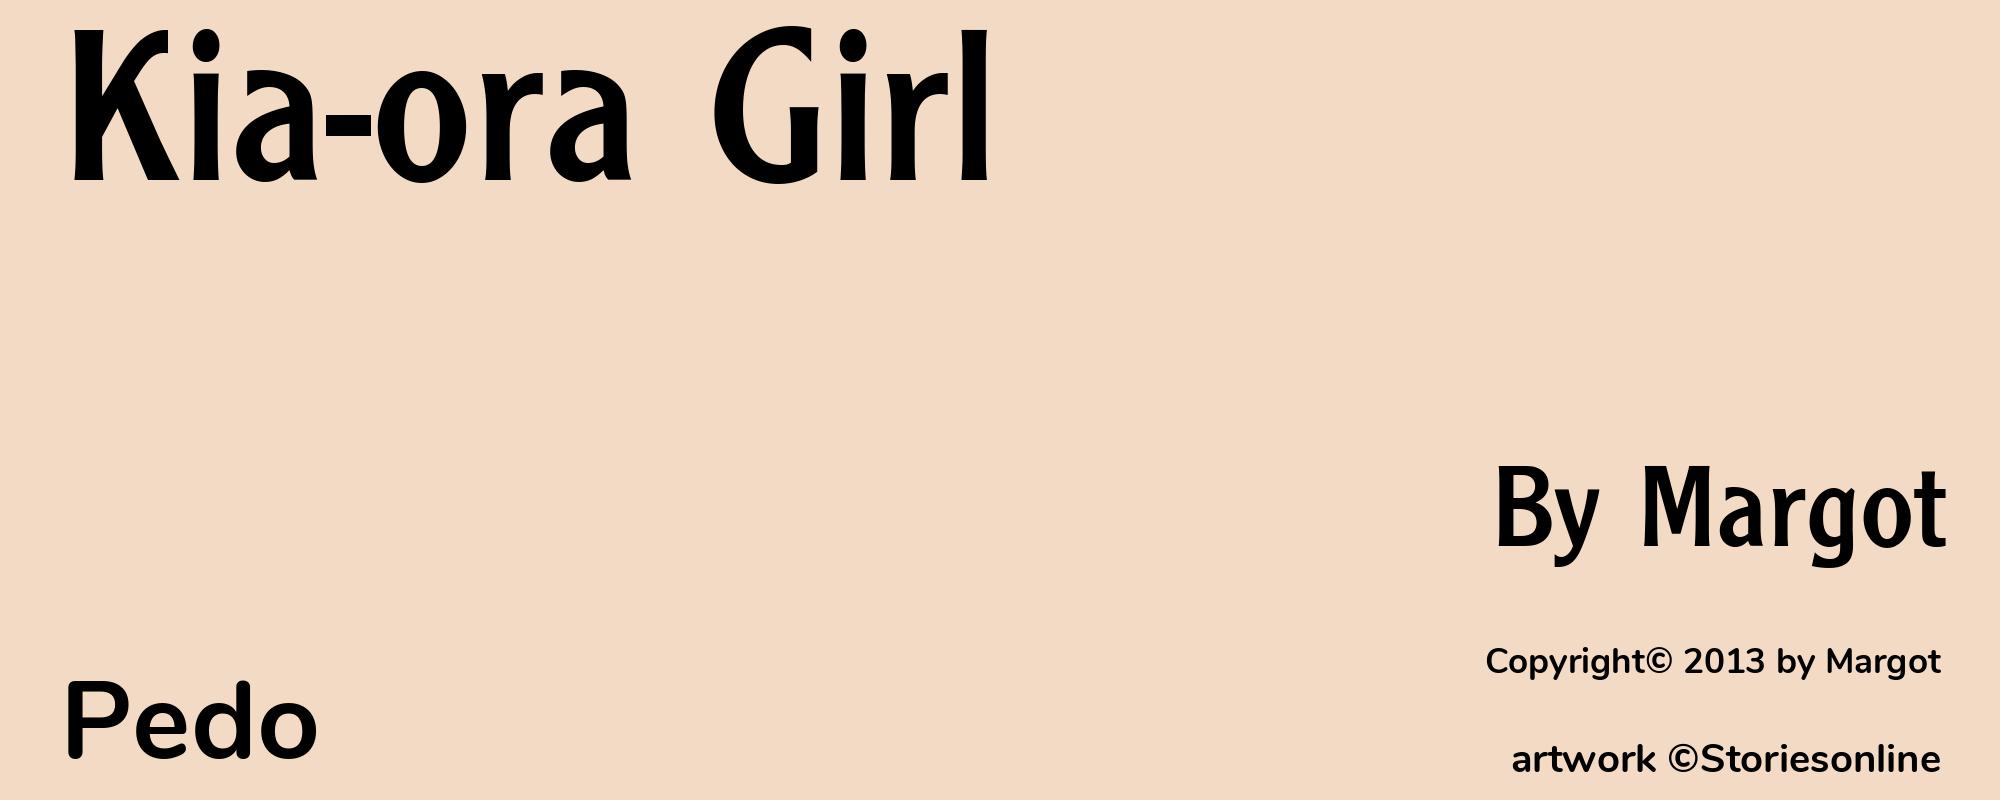 Kia-ora Girl - Cover